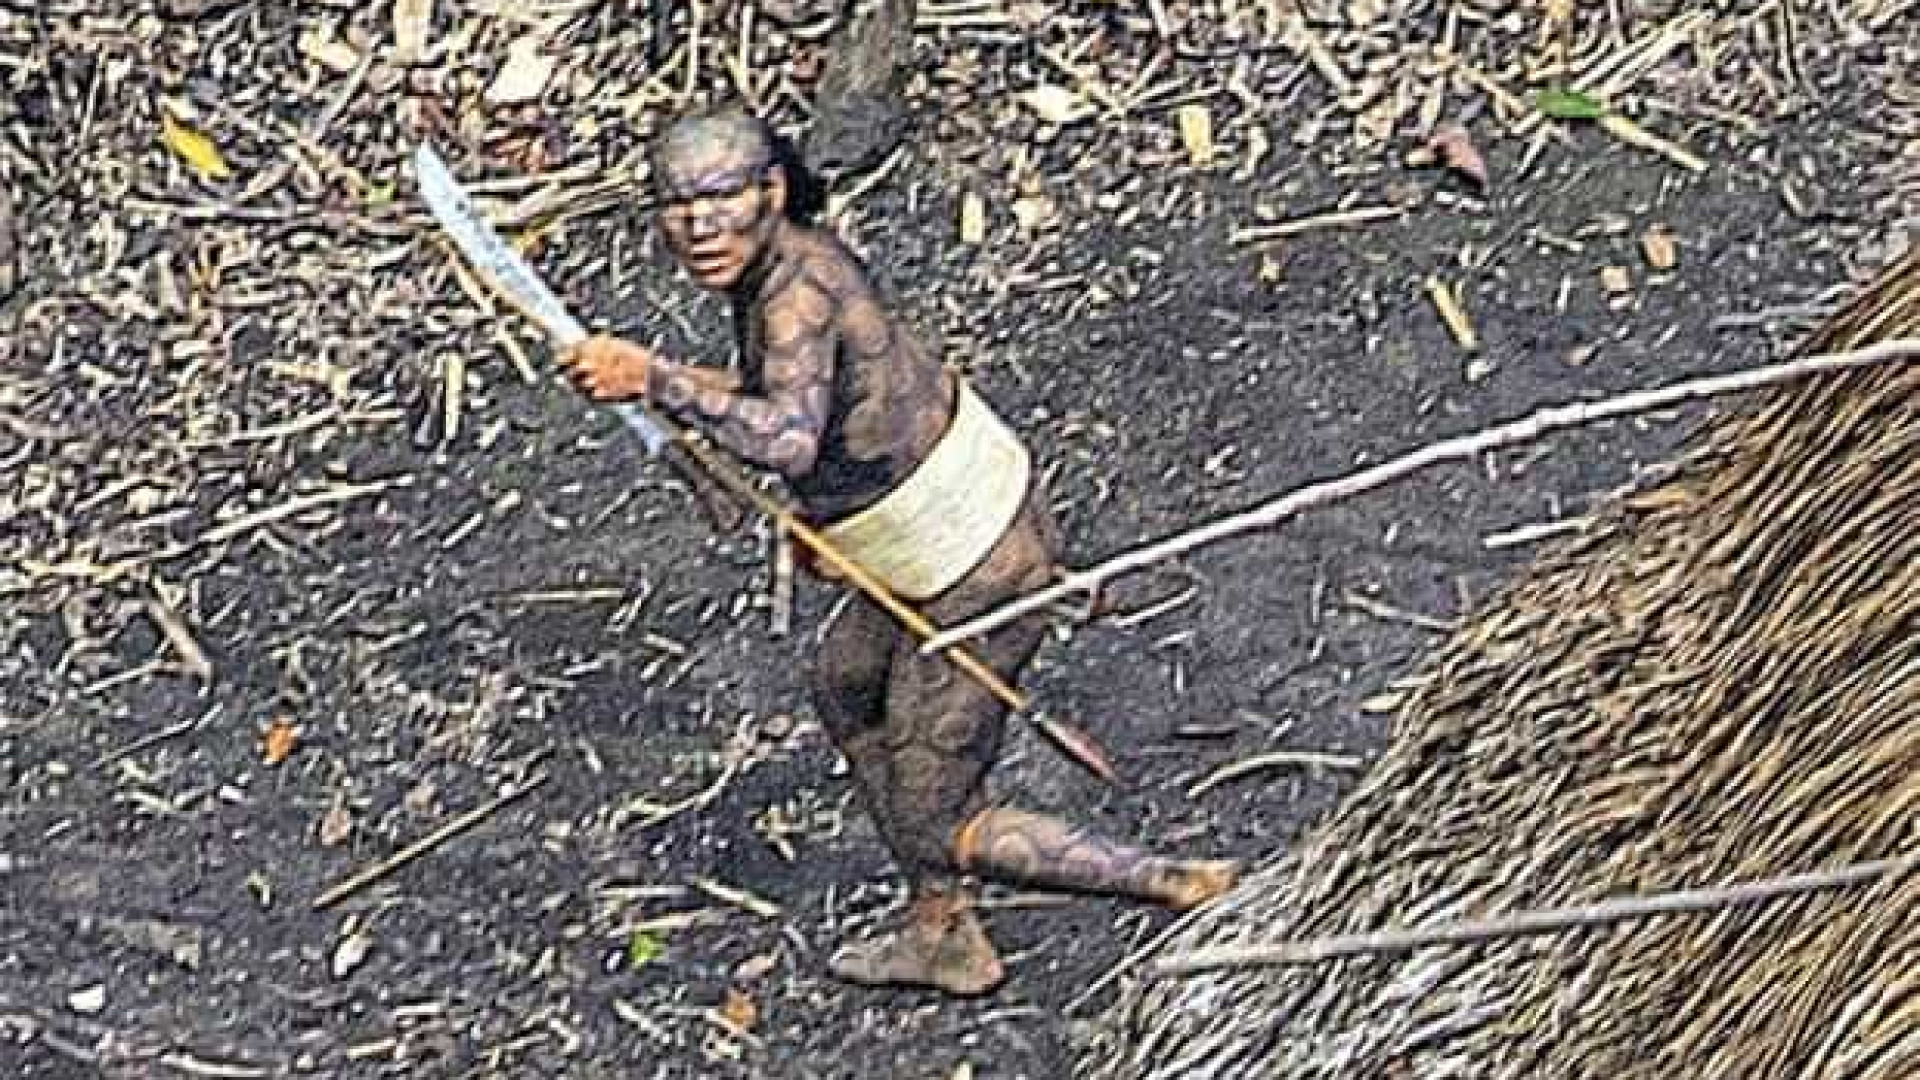 Novas características de índios isolados no Acre são reveladas